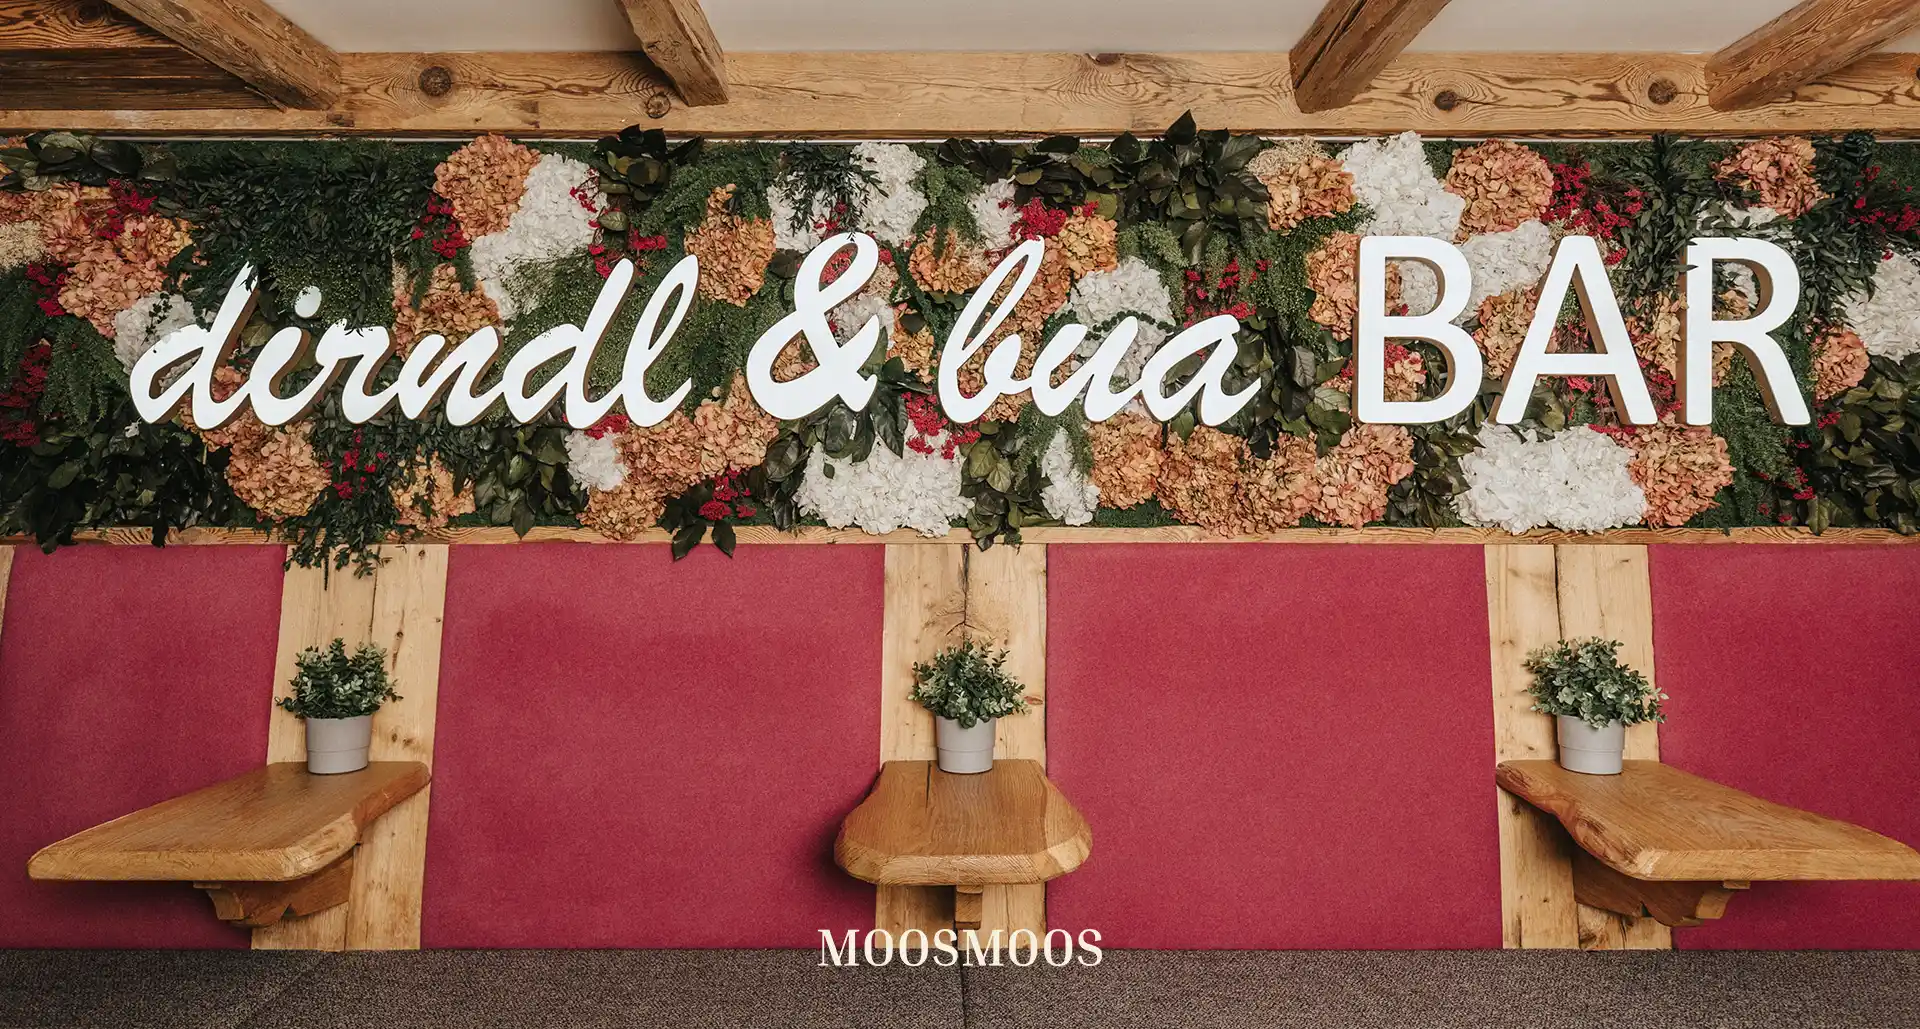 MOOSMOOS Blumenwand / Flowerwall mit echten Blumen, Pflanzen und Moosen im Restaurant